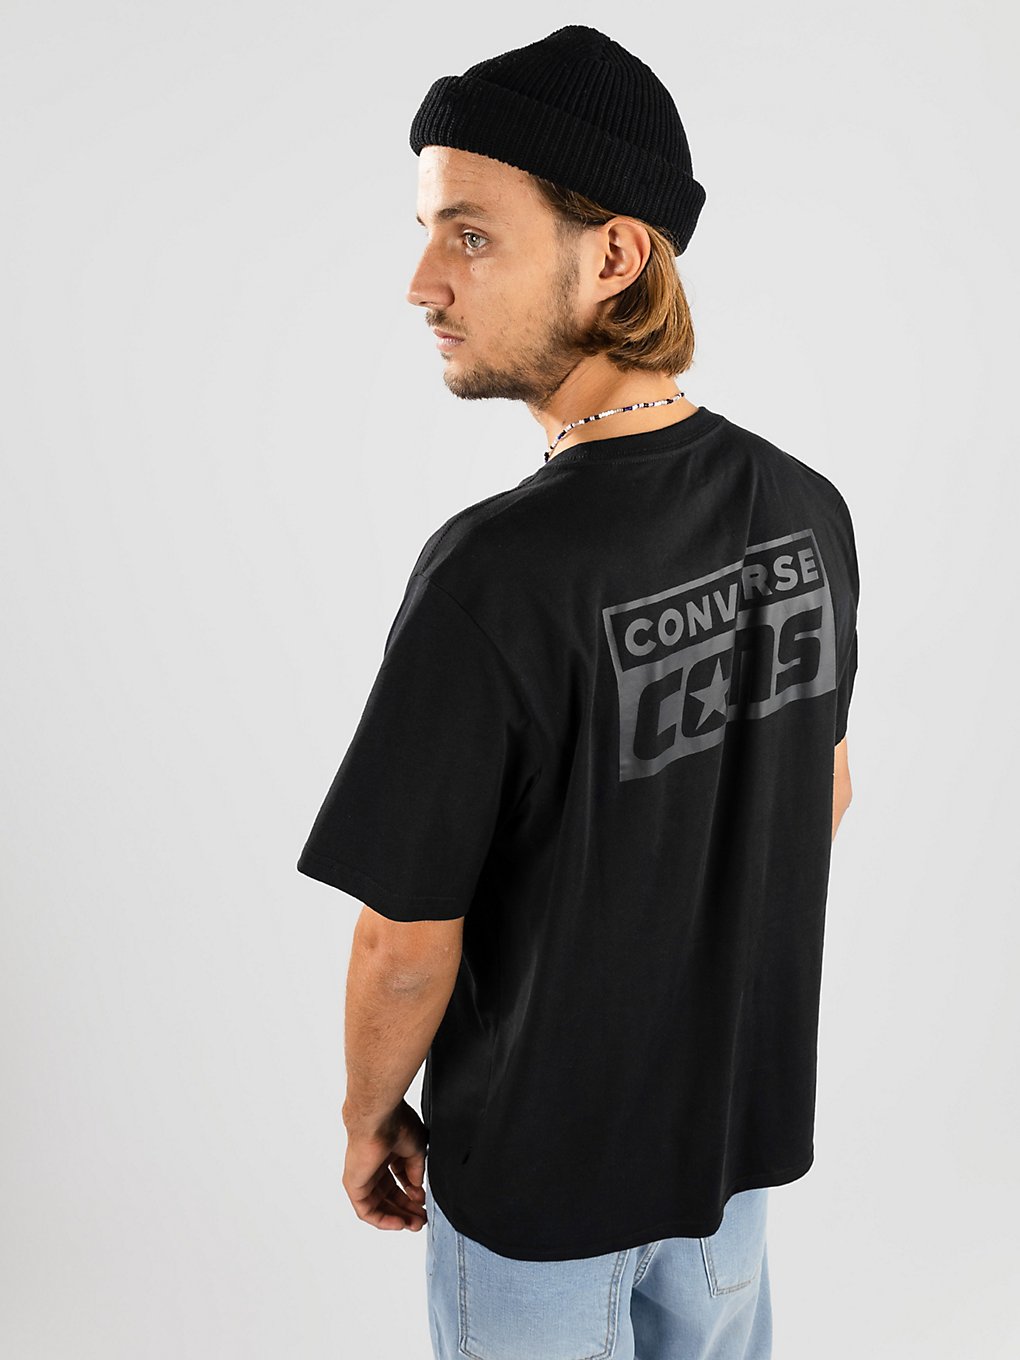 Converse Cons T-Shirt zwart